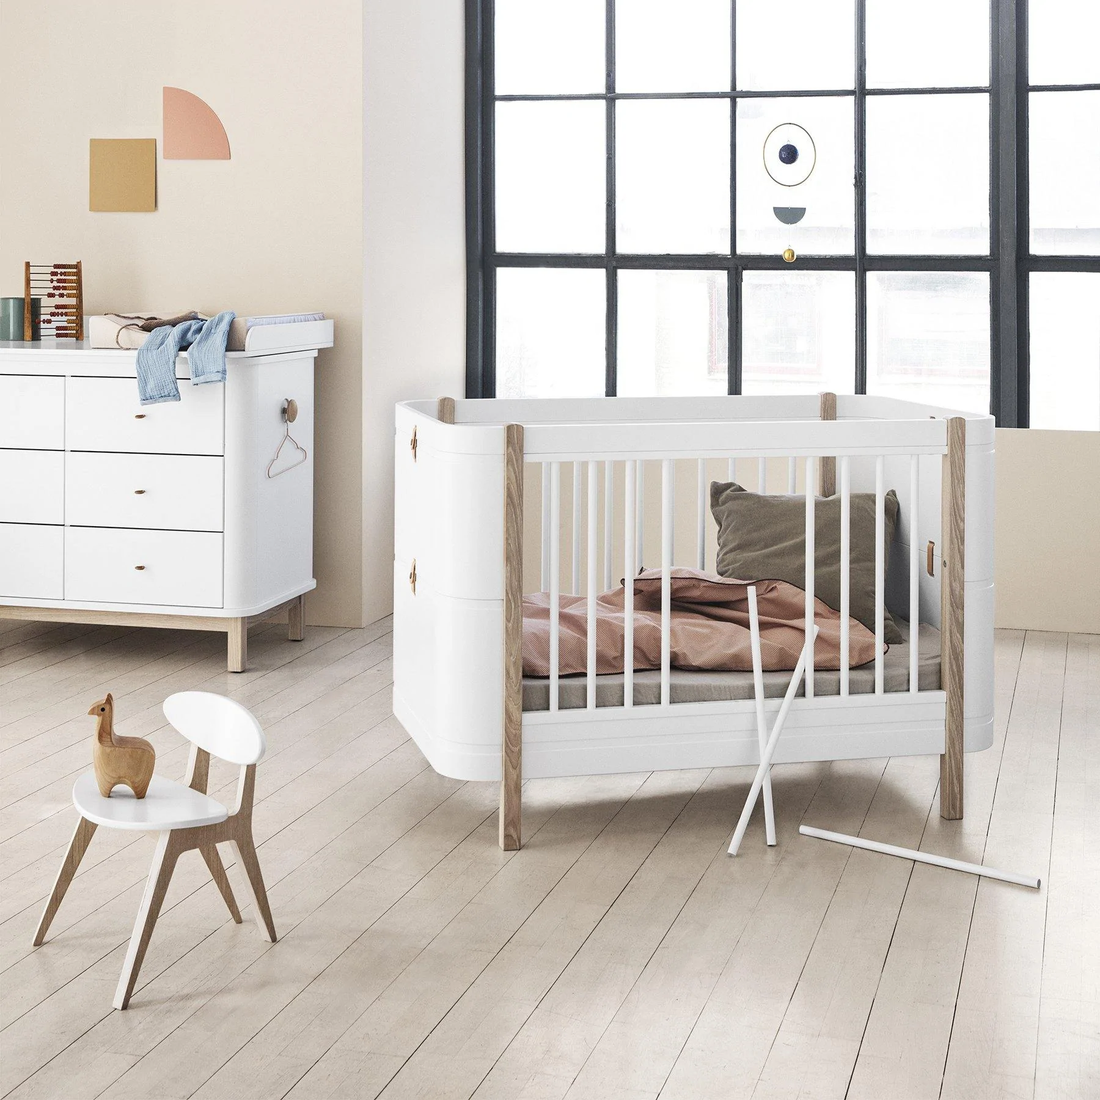 Oliver Furniture - Wooden Nursery & Kids Furniture